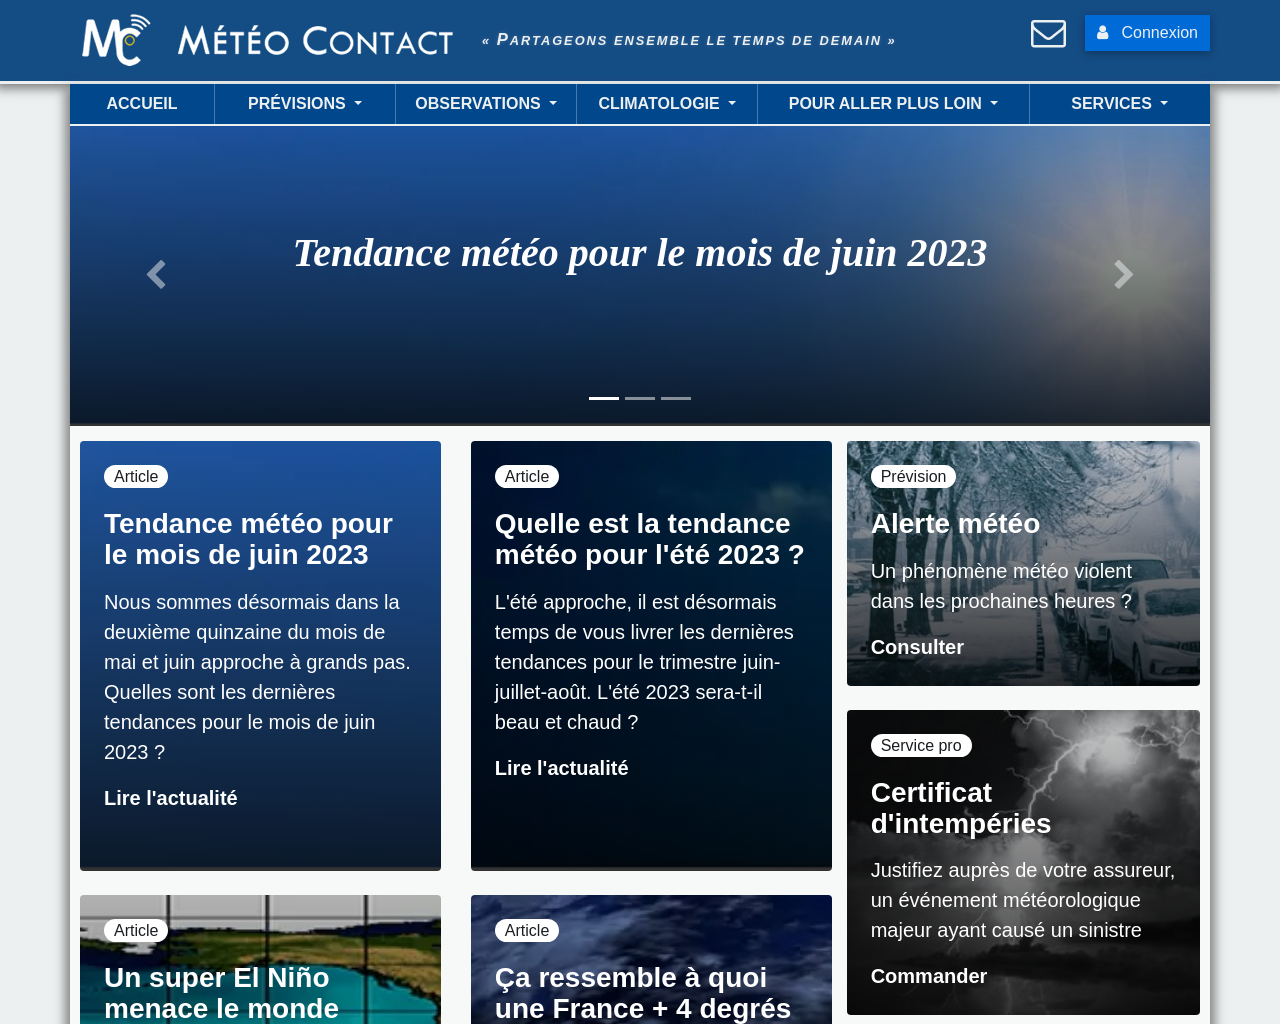 www.meteocontact.fr